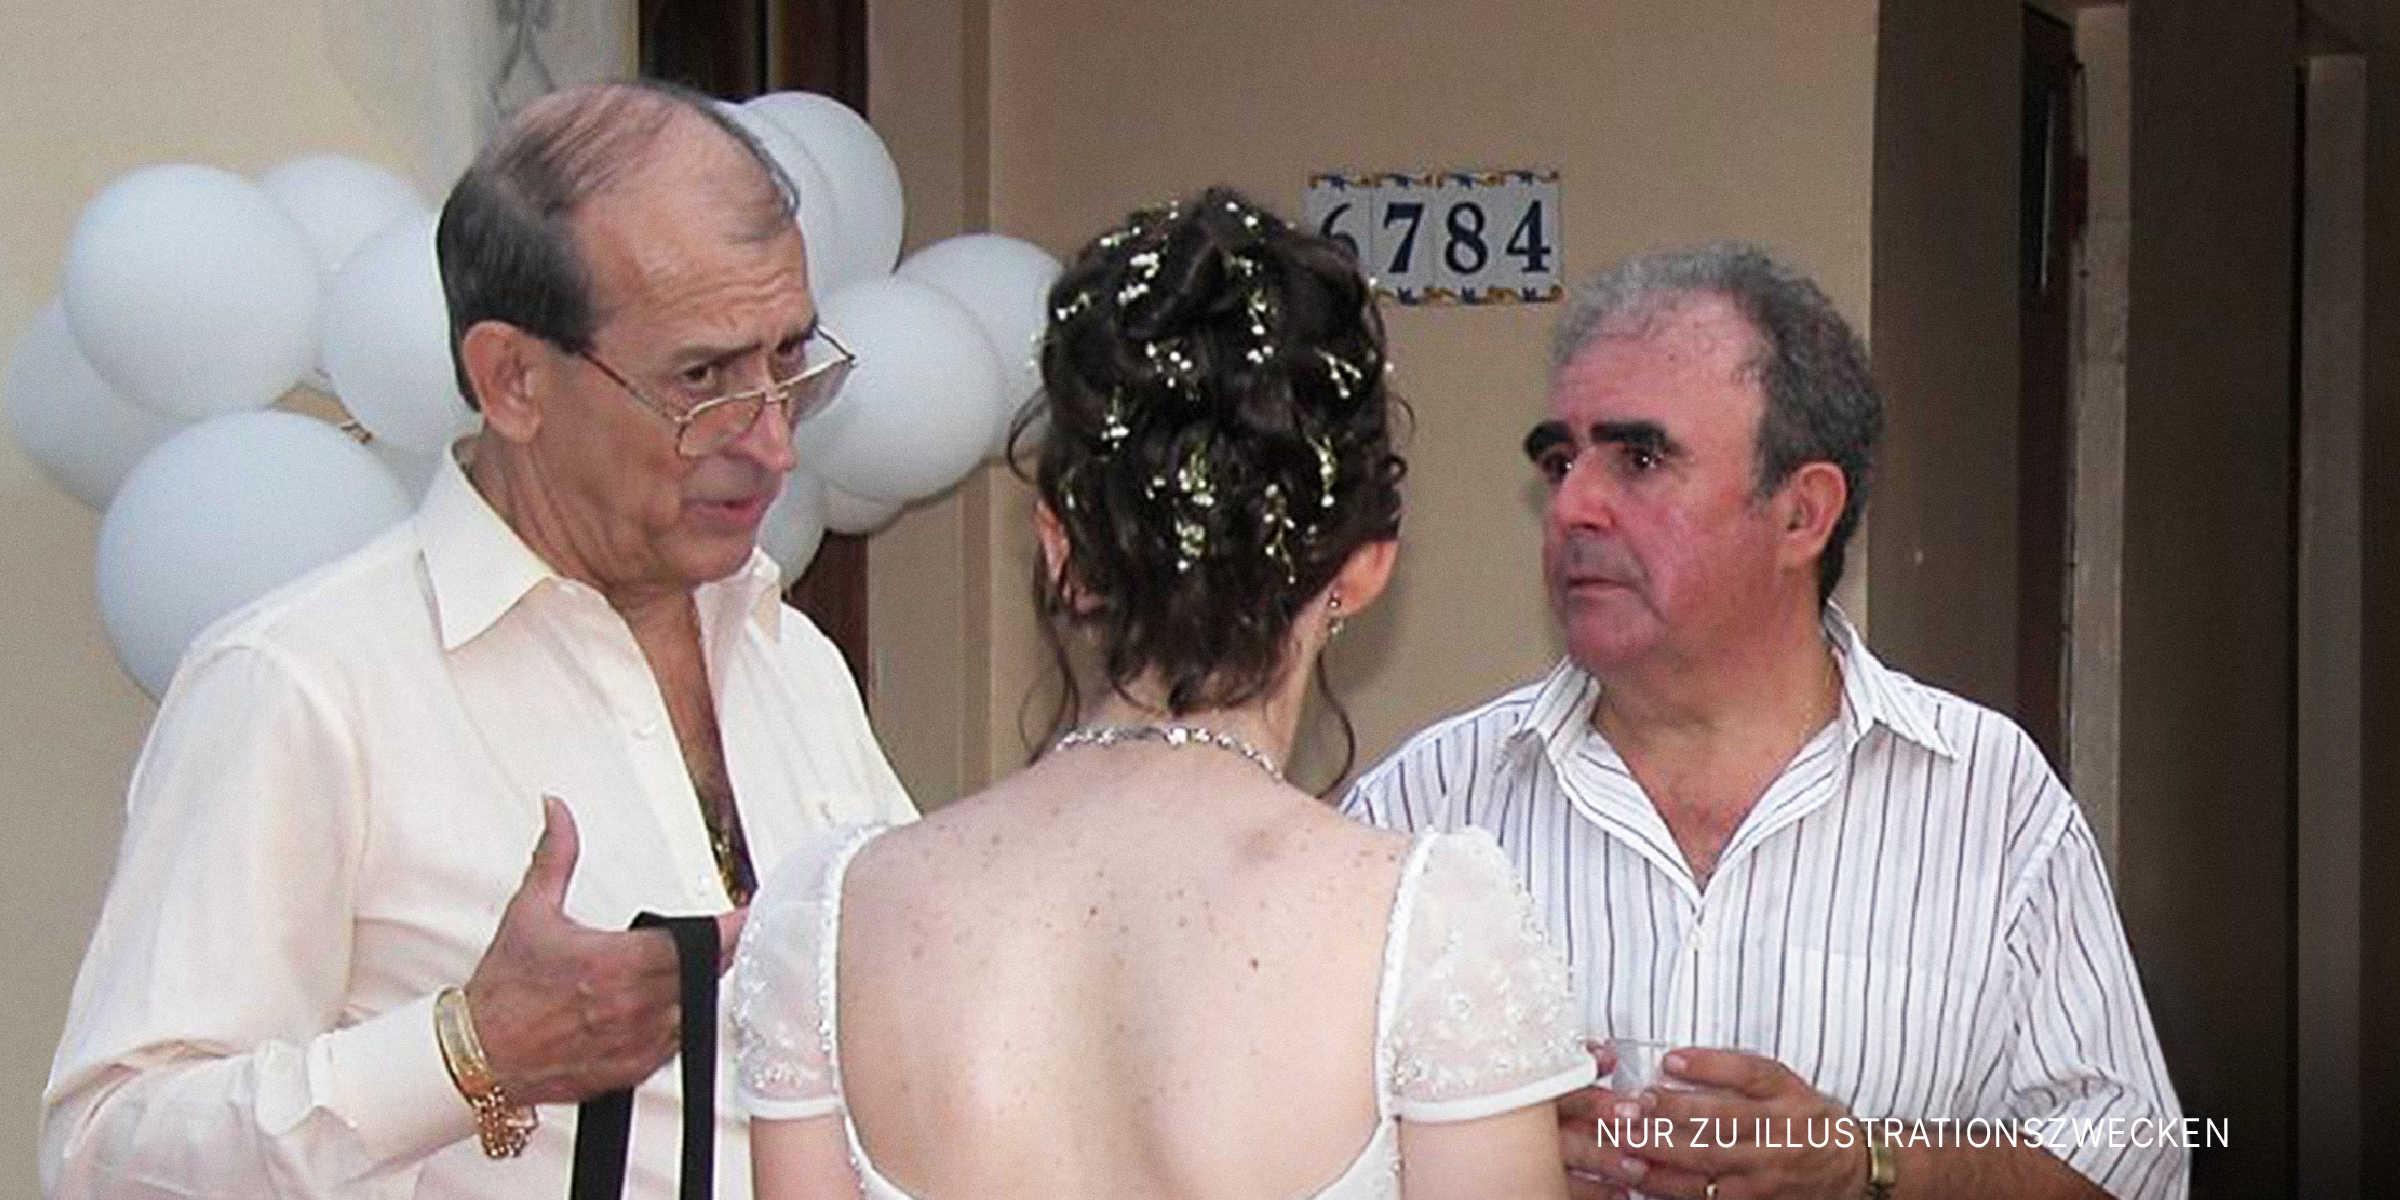 Zwei ernste Männer im Gespräch mit einer Braut | Quelle: Flickr / fer320 (CC BY 2.0)